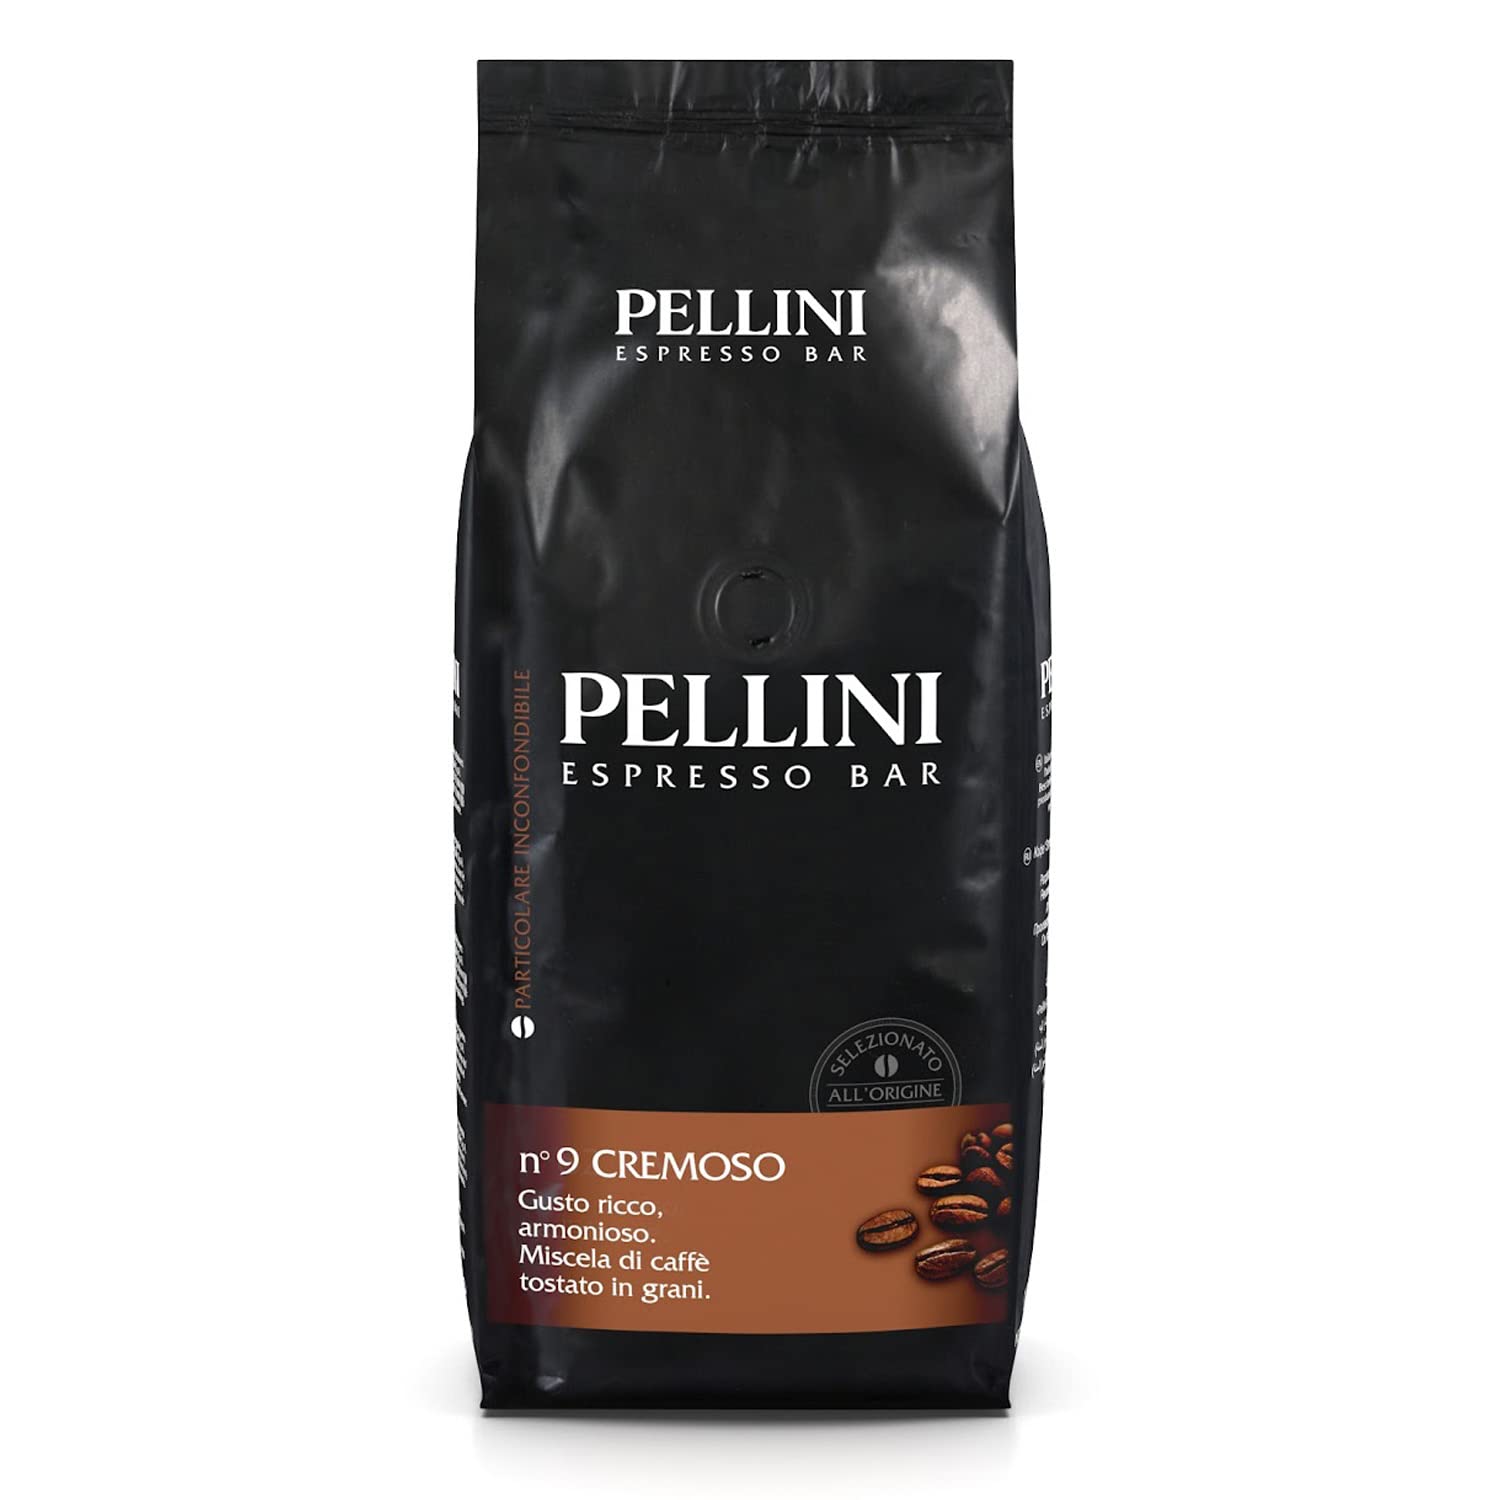 Pellini Pellini Espresso Bar No. 9 Cremoso Coffee 1kg